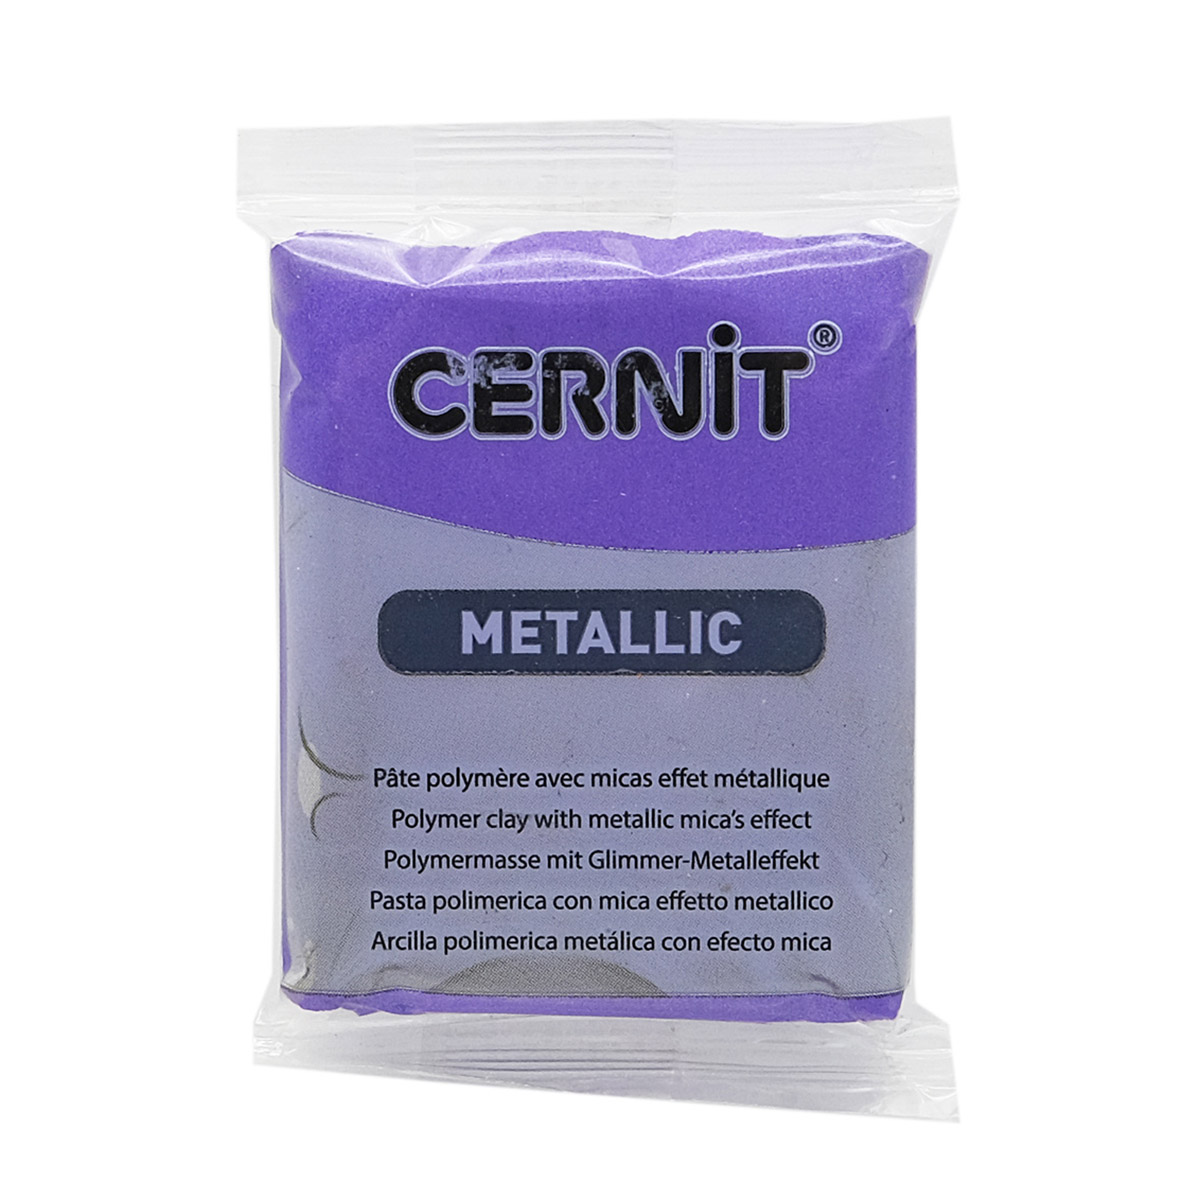 Пластика Cernit Metallic, 56 грамм, цвет 900 фиолетовый, арт. CE0870056 клаксон dream bike пластик в индивидуальной упаковке фиолетовый